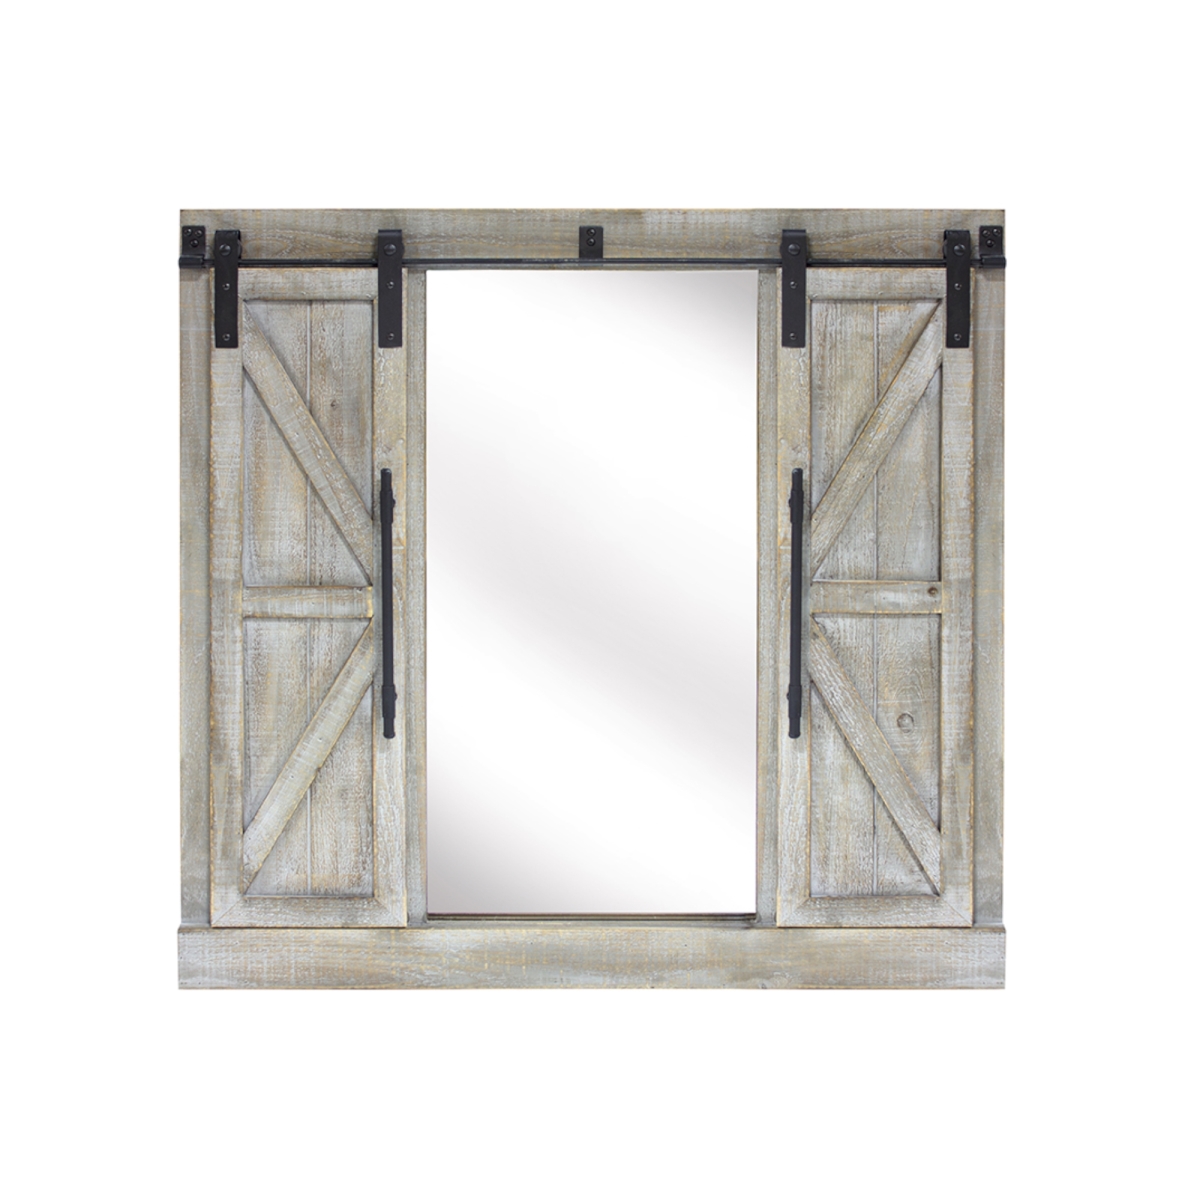 72523ds 39.5 X 3 In. Barn Door Mirror, Wood & Glass - Brown & Gray